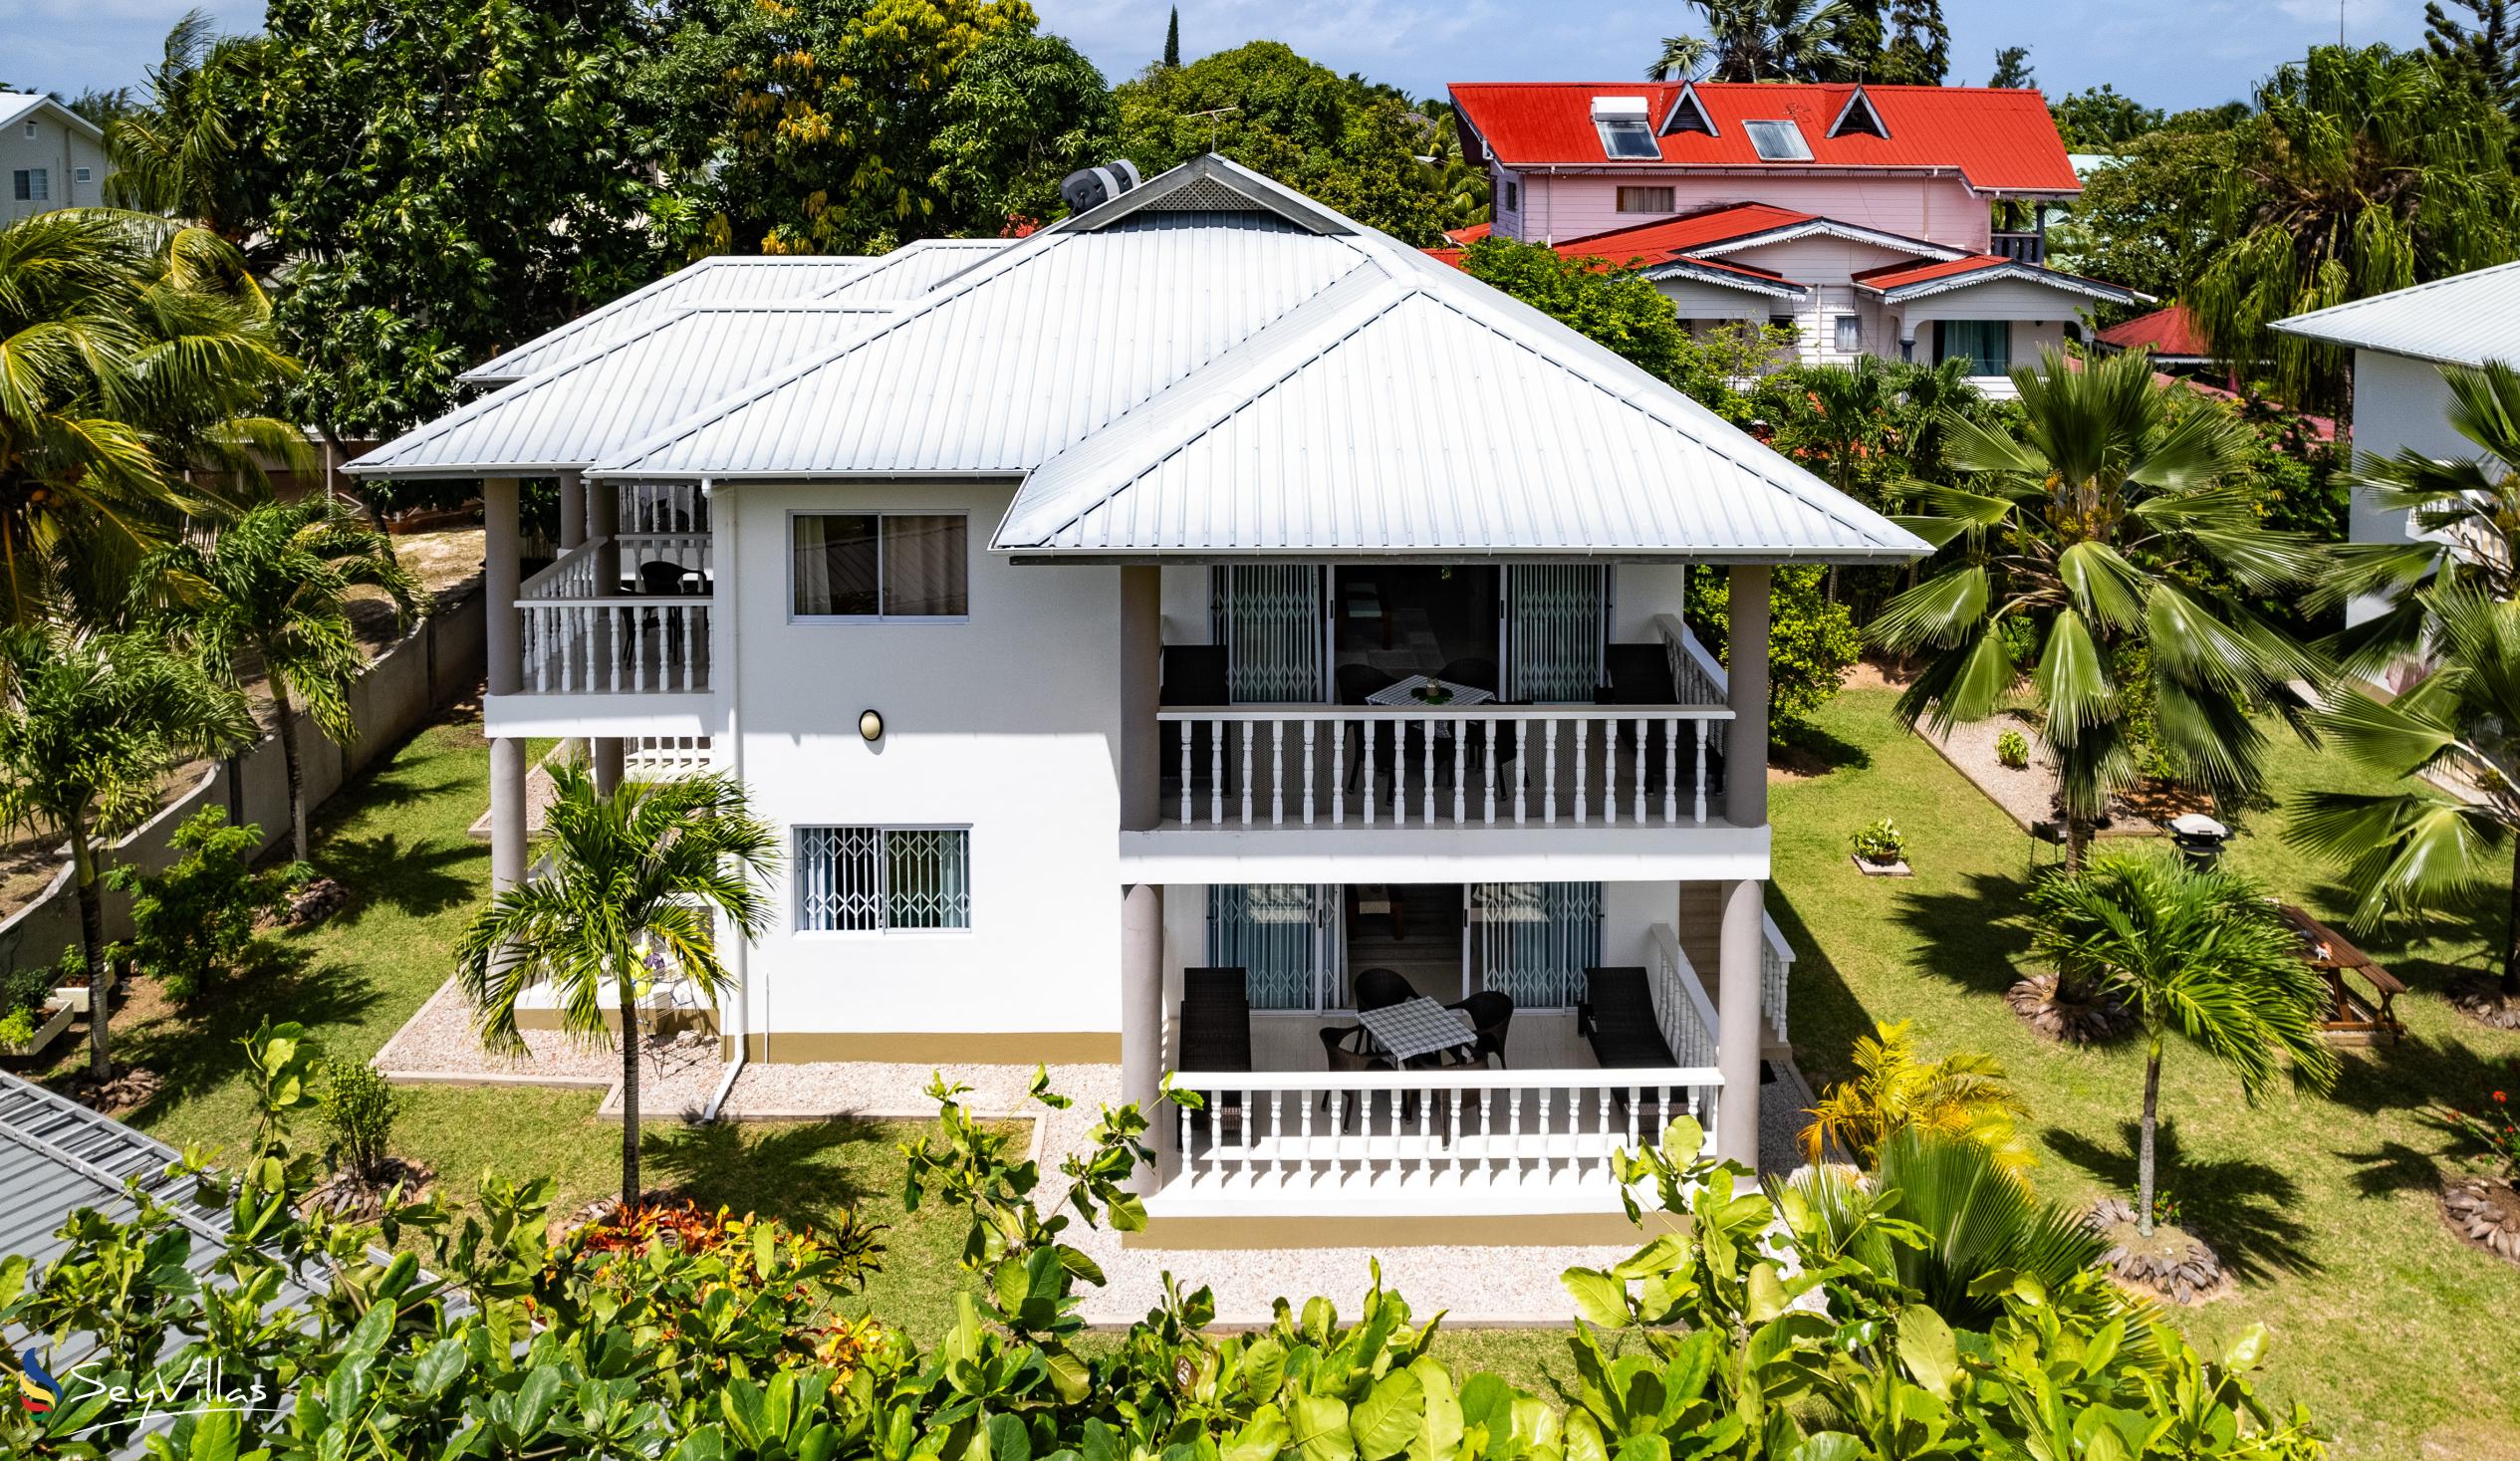 Foto 7: Casa Tara Villas - Aussenbereich - Praslin (Seychellen)